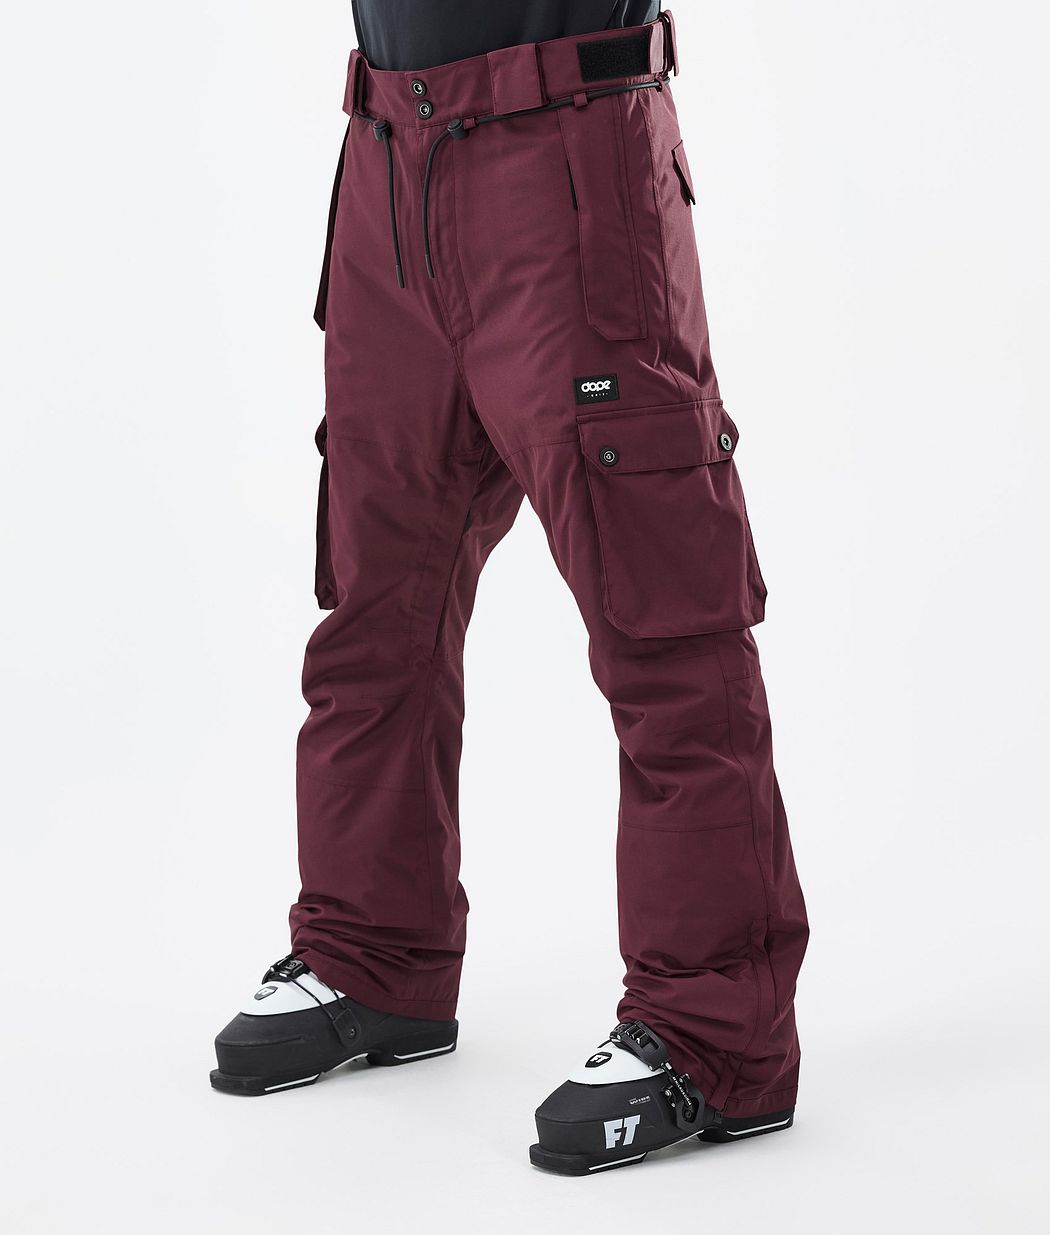 Dope Iconic Men's Ski Pants Don Burgundy | Dopesnow.com